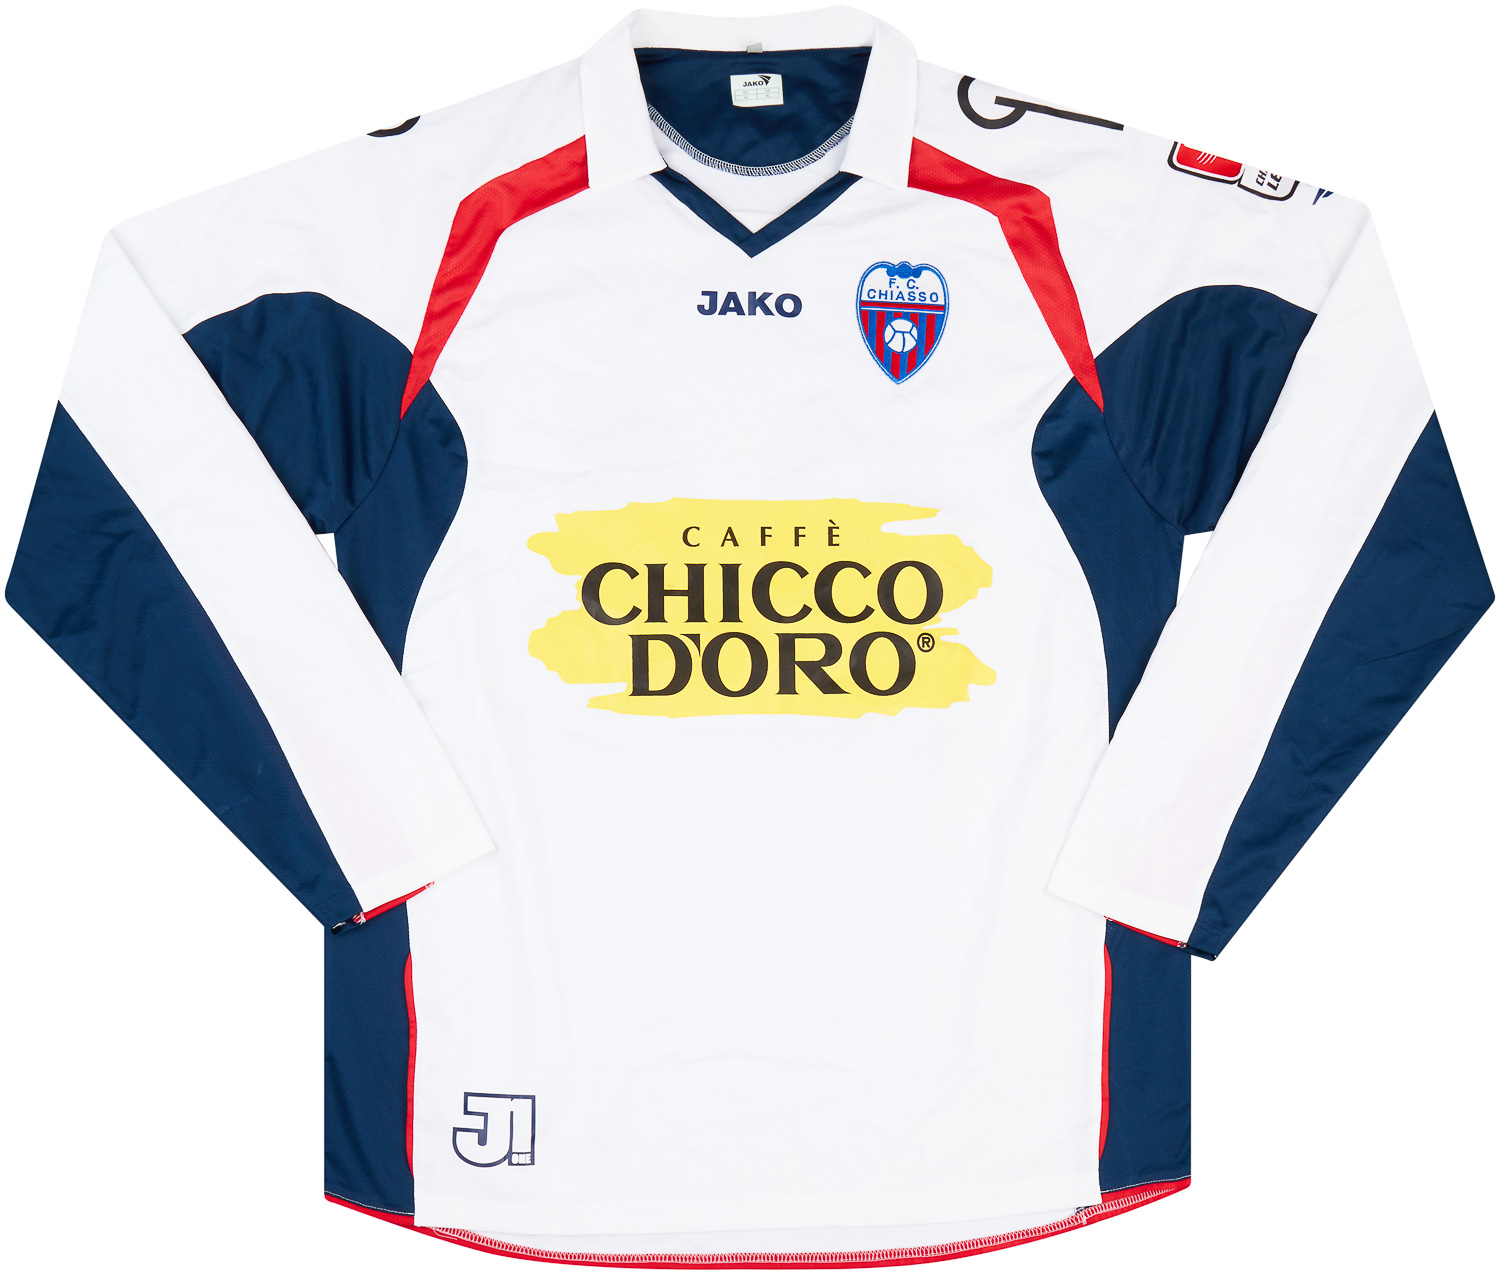 2006-07 Chiasso Match Issue Away Shirt #24 (Vanetta)